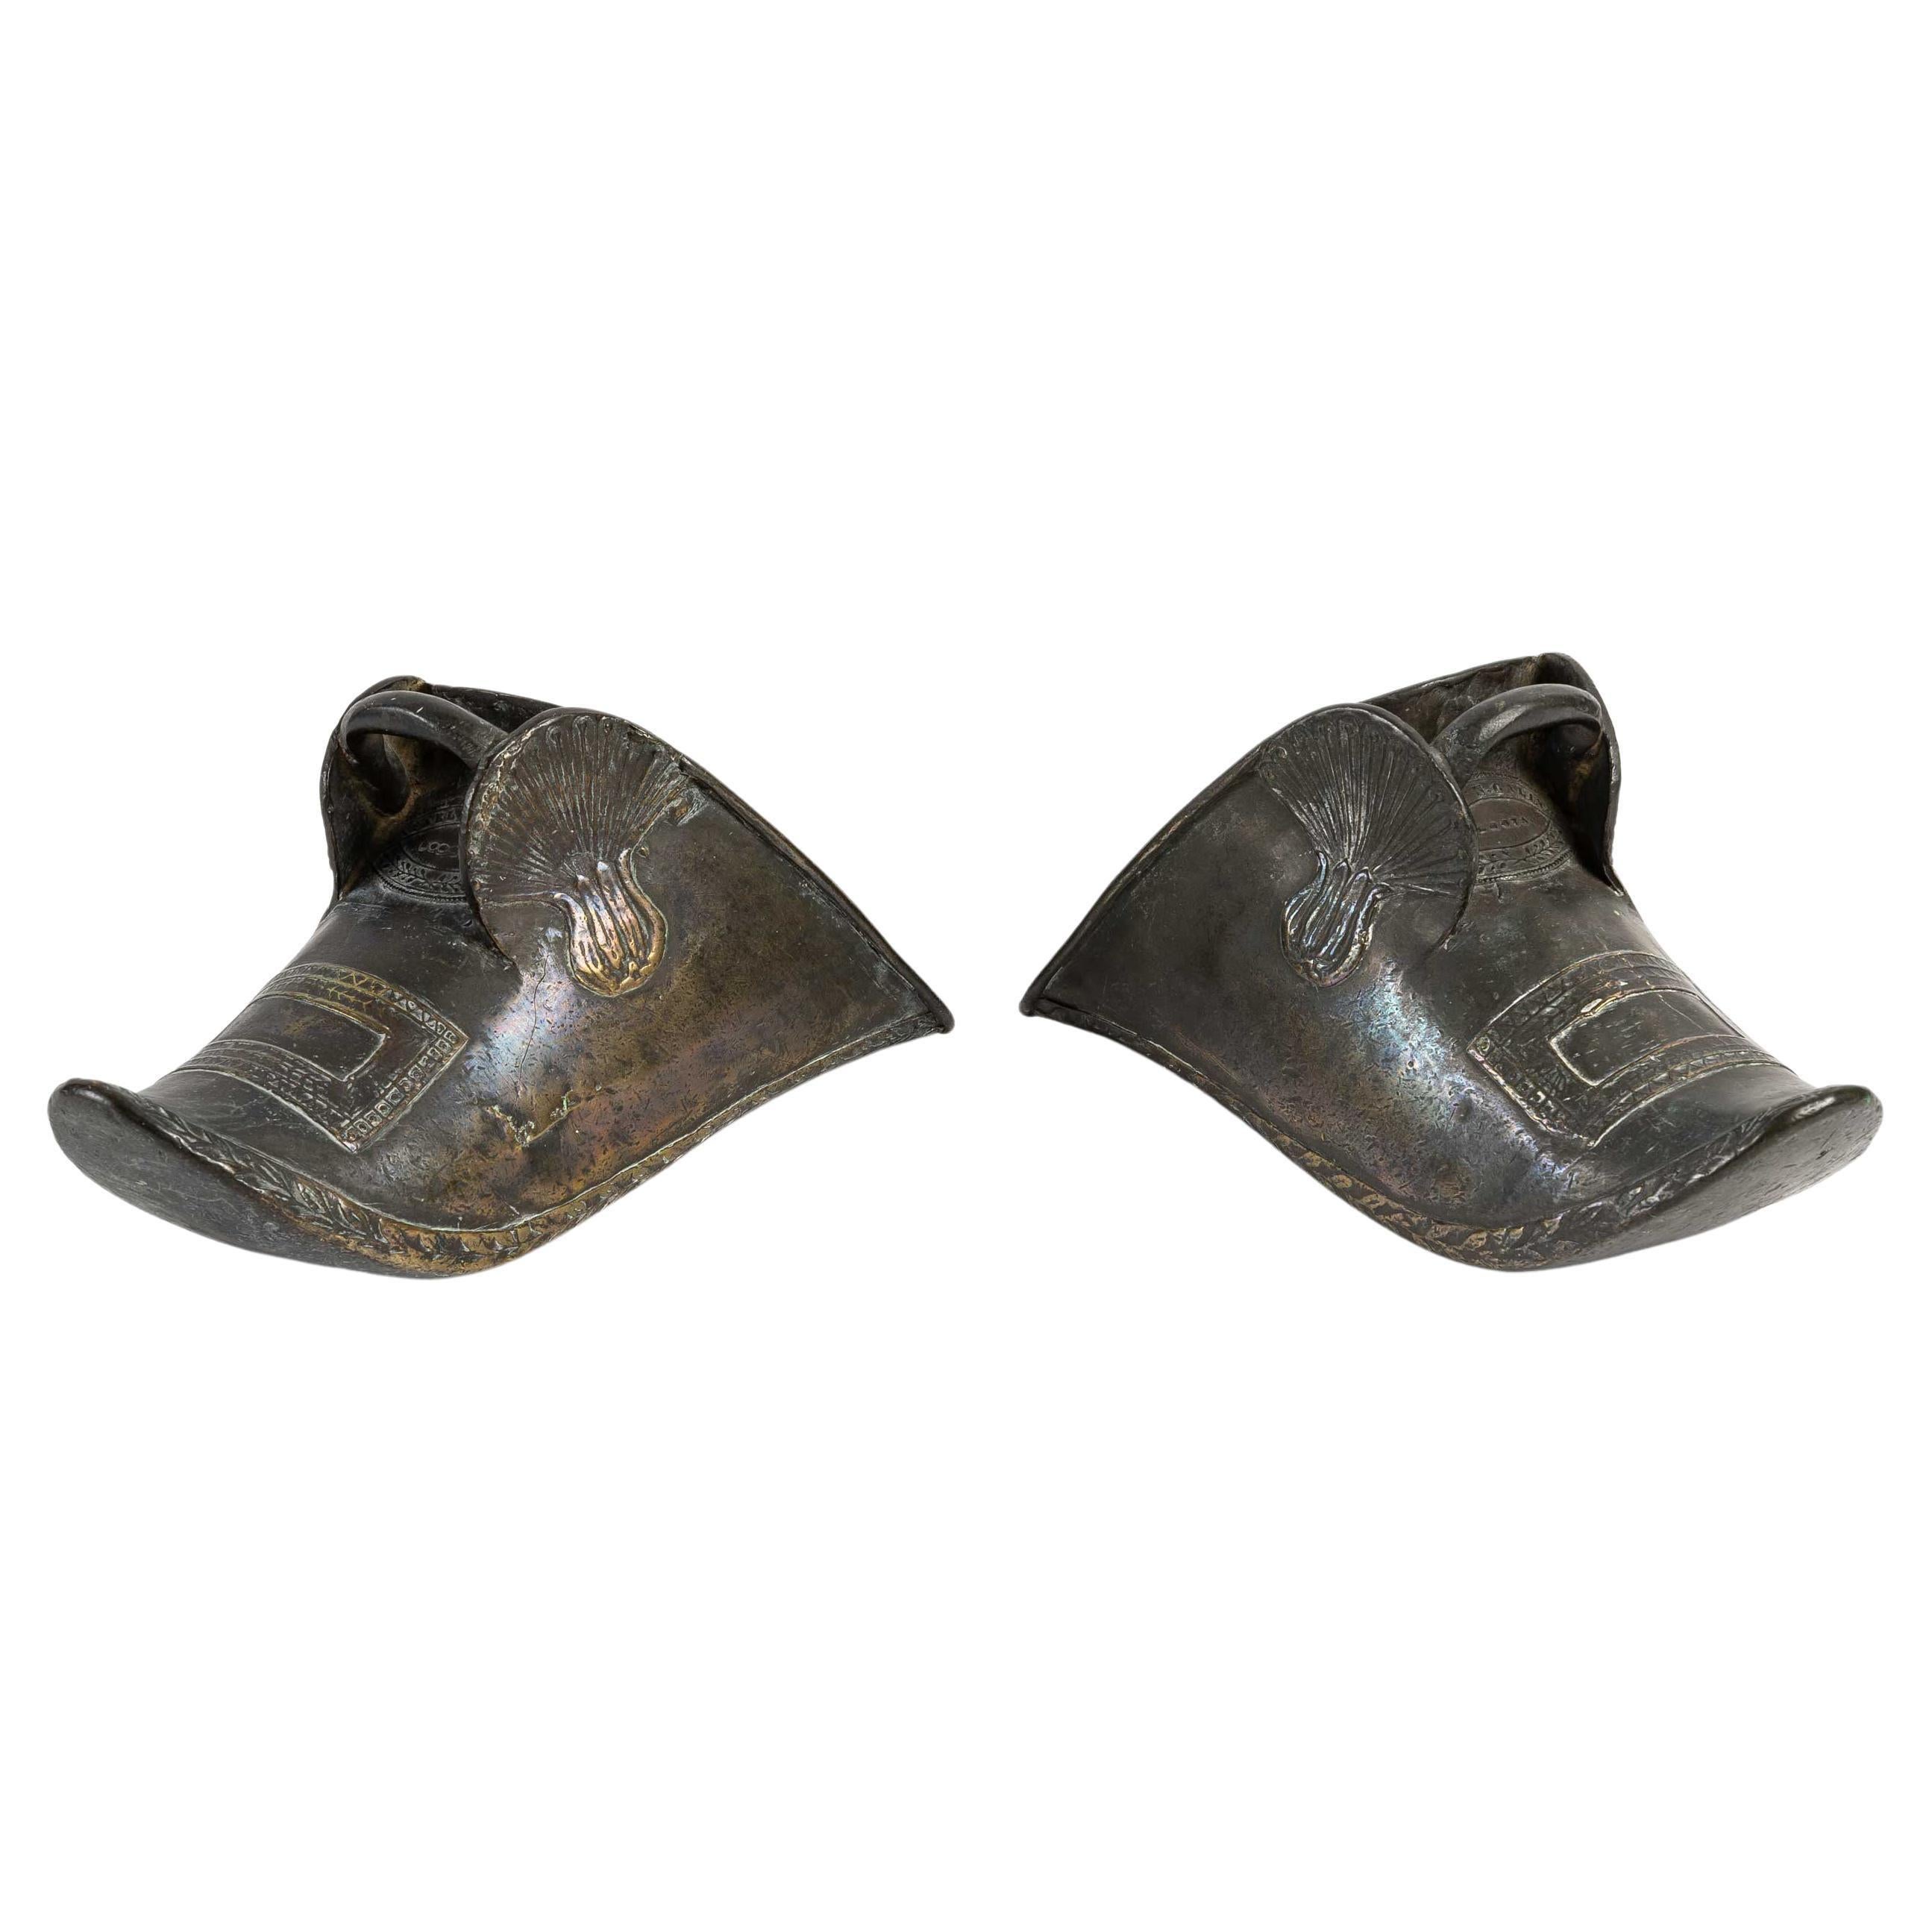 Pair of Bronze stirrups (Estribos), 19th century.
Measures: H: 14 cm, W: 29 cm, D: 11 cm.